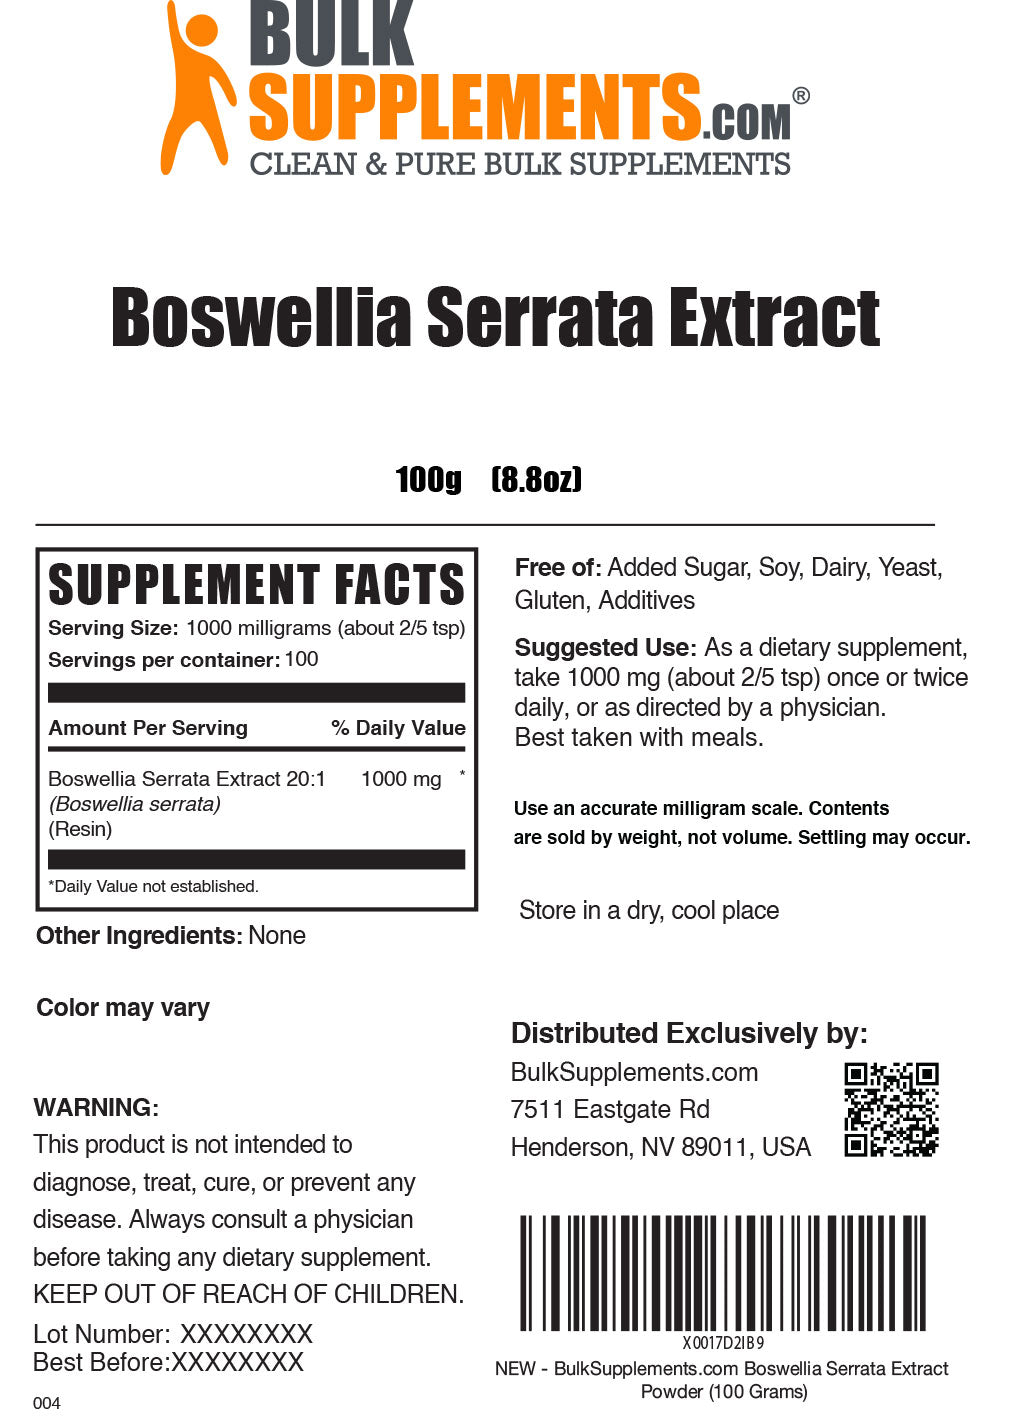 100g Boswellia Serrata Supplement Facts Label